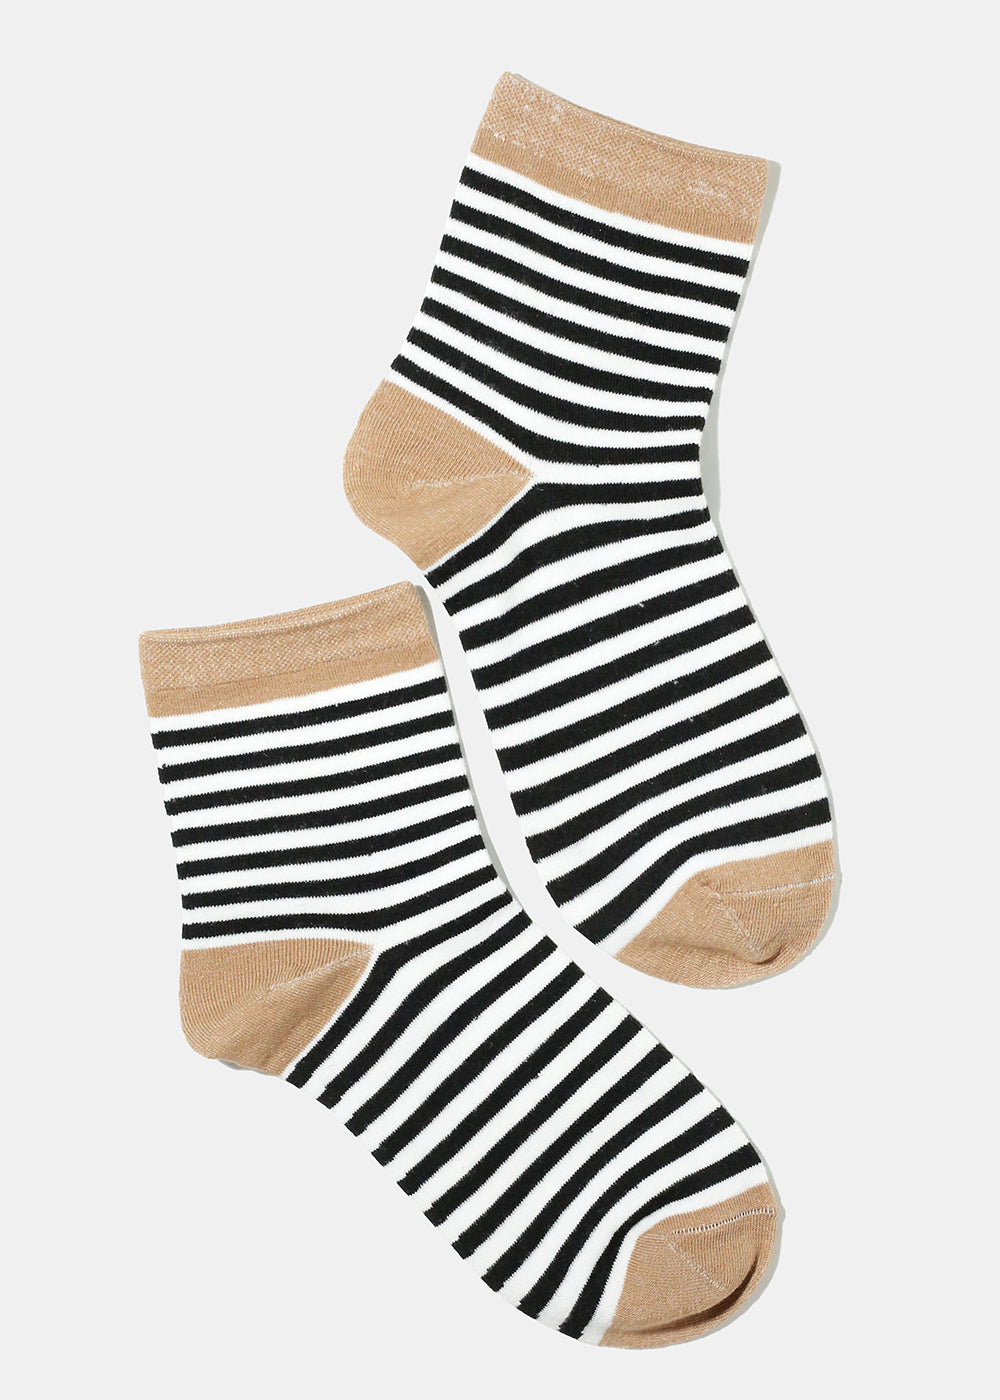 Stripped Crew Socks – Shop Miss A